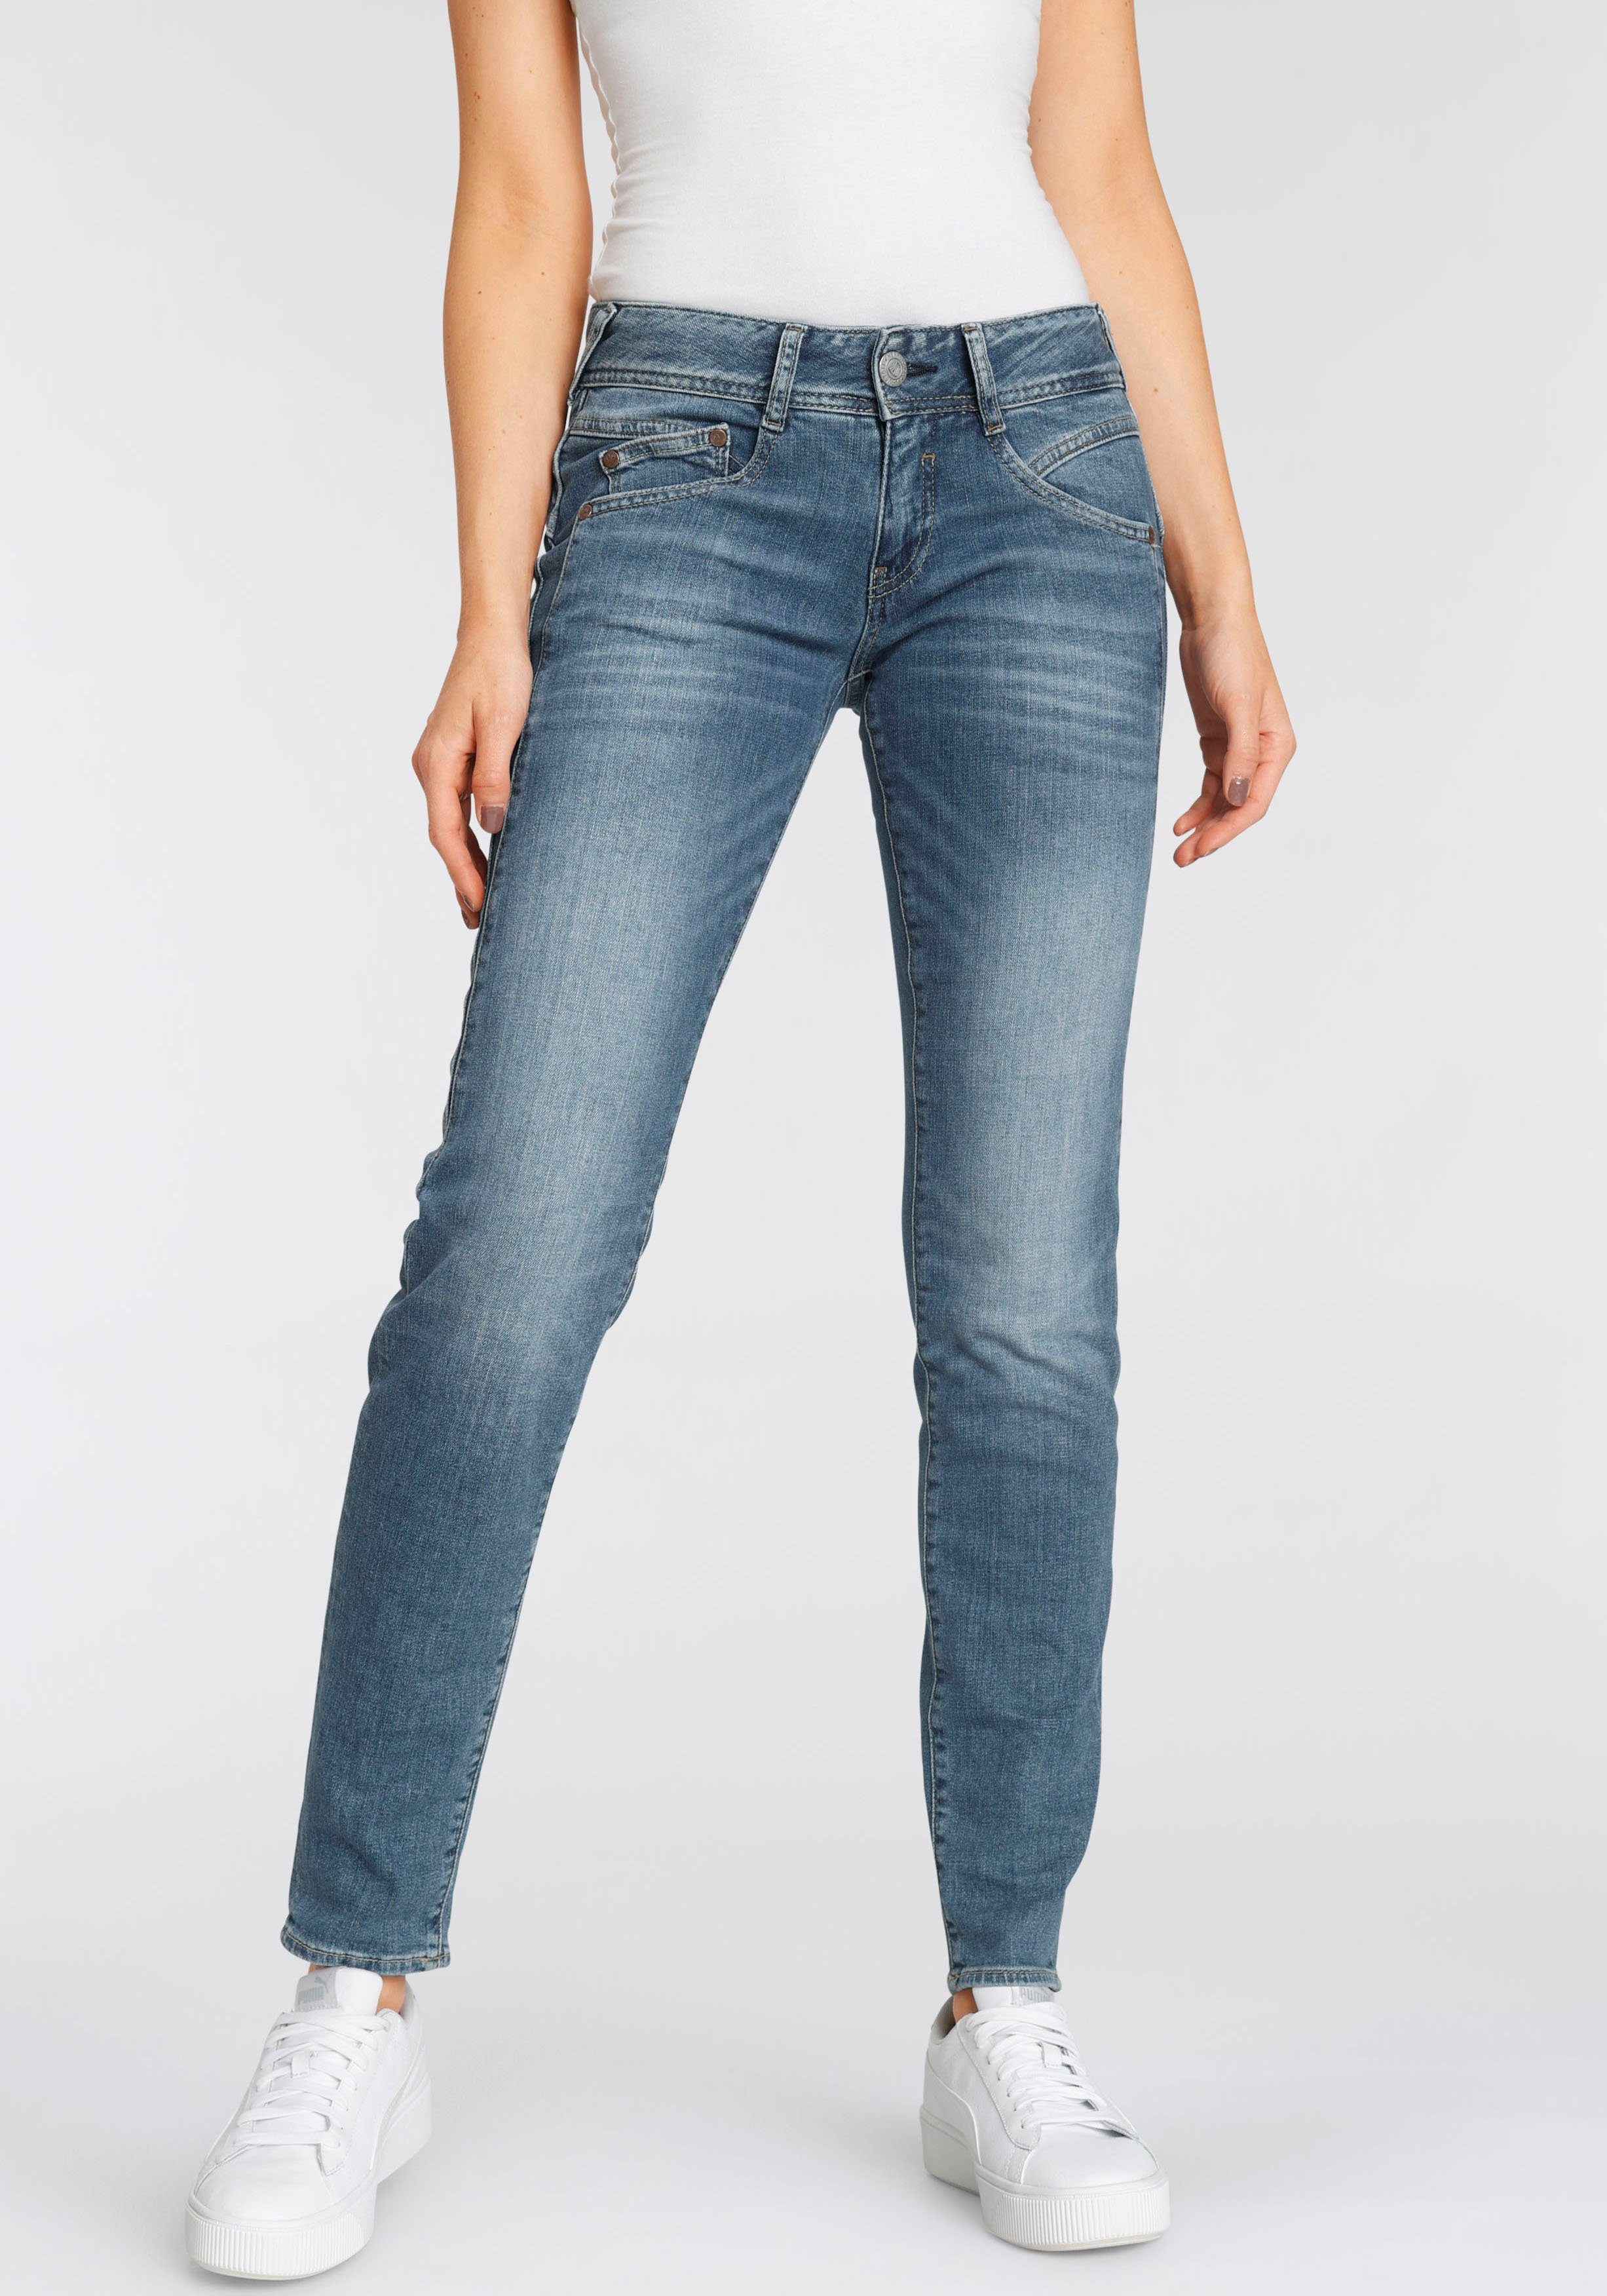 Herrlicher Slim-fit-Jeans »GINA RECYCLED DENIM« mit seitlichem Keileinsatz  online kaufen | OTTO